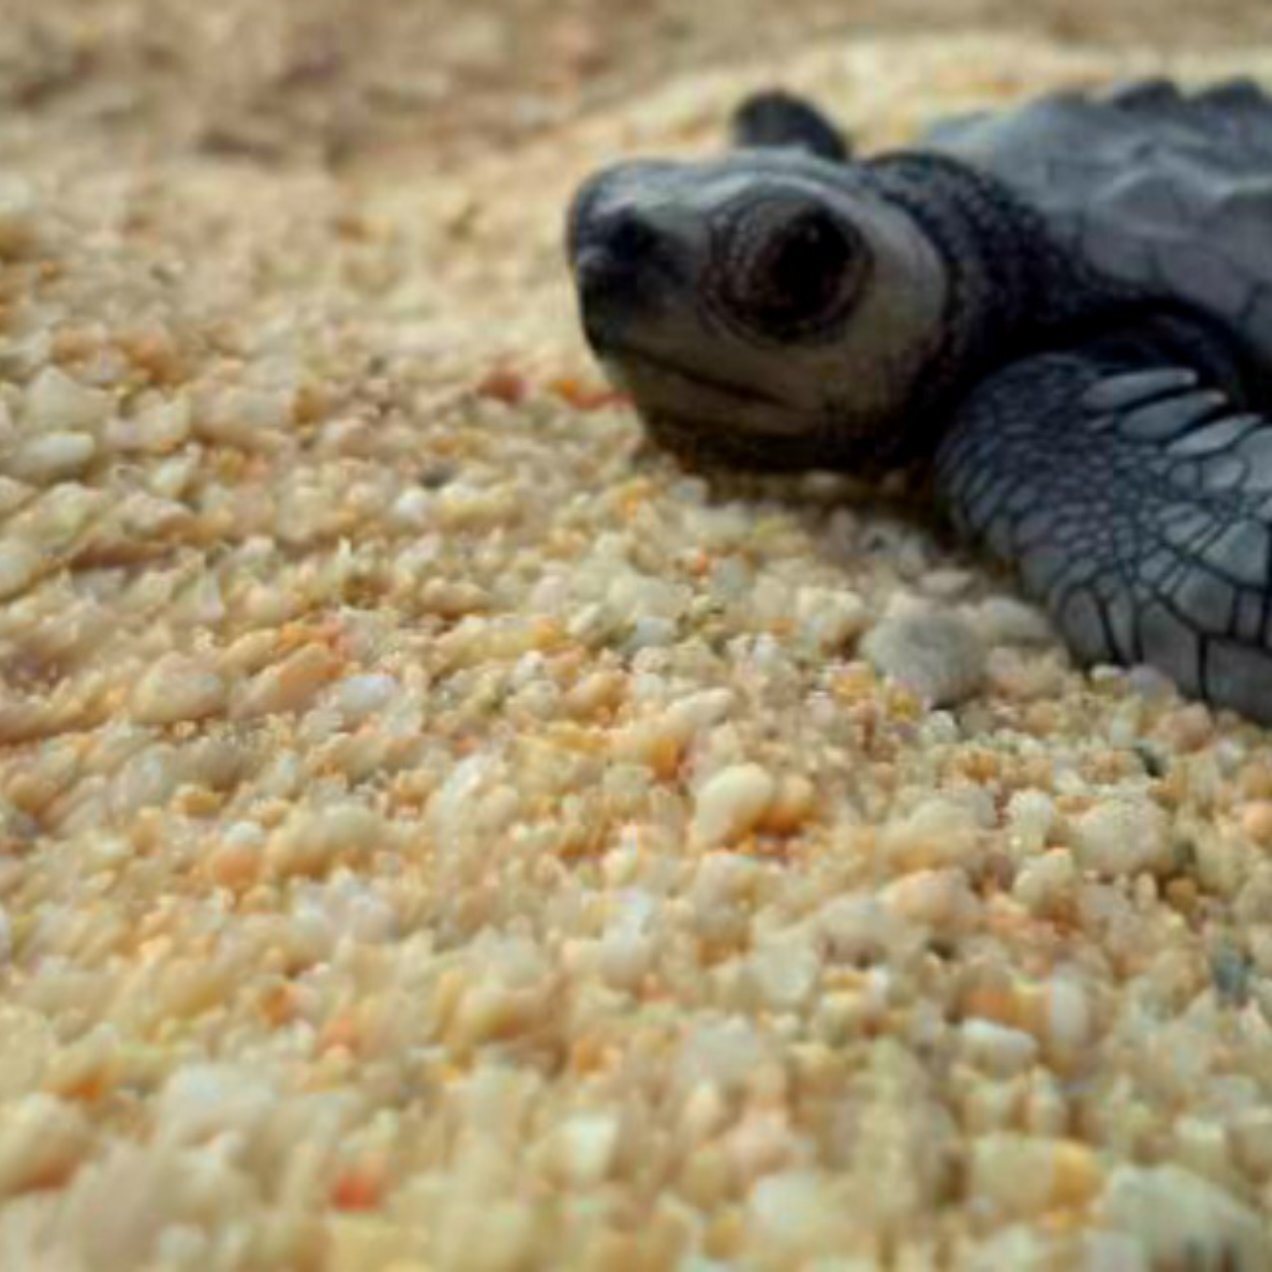 Tortugas bebés (marinas) en México como nacen estas lindas creaturas